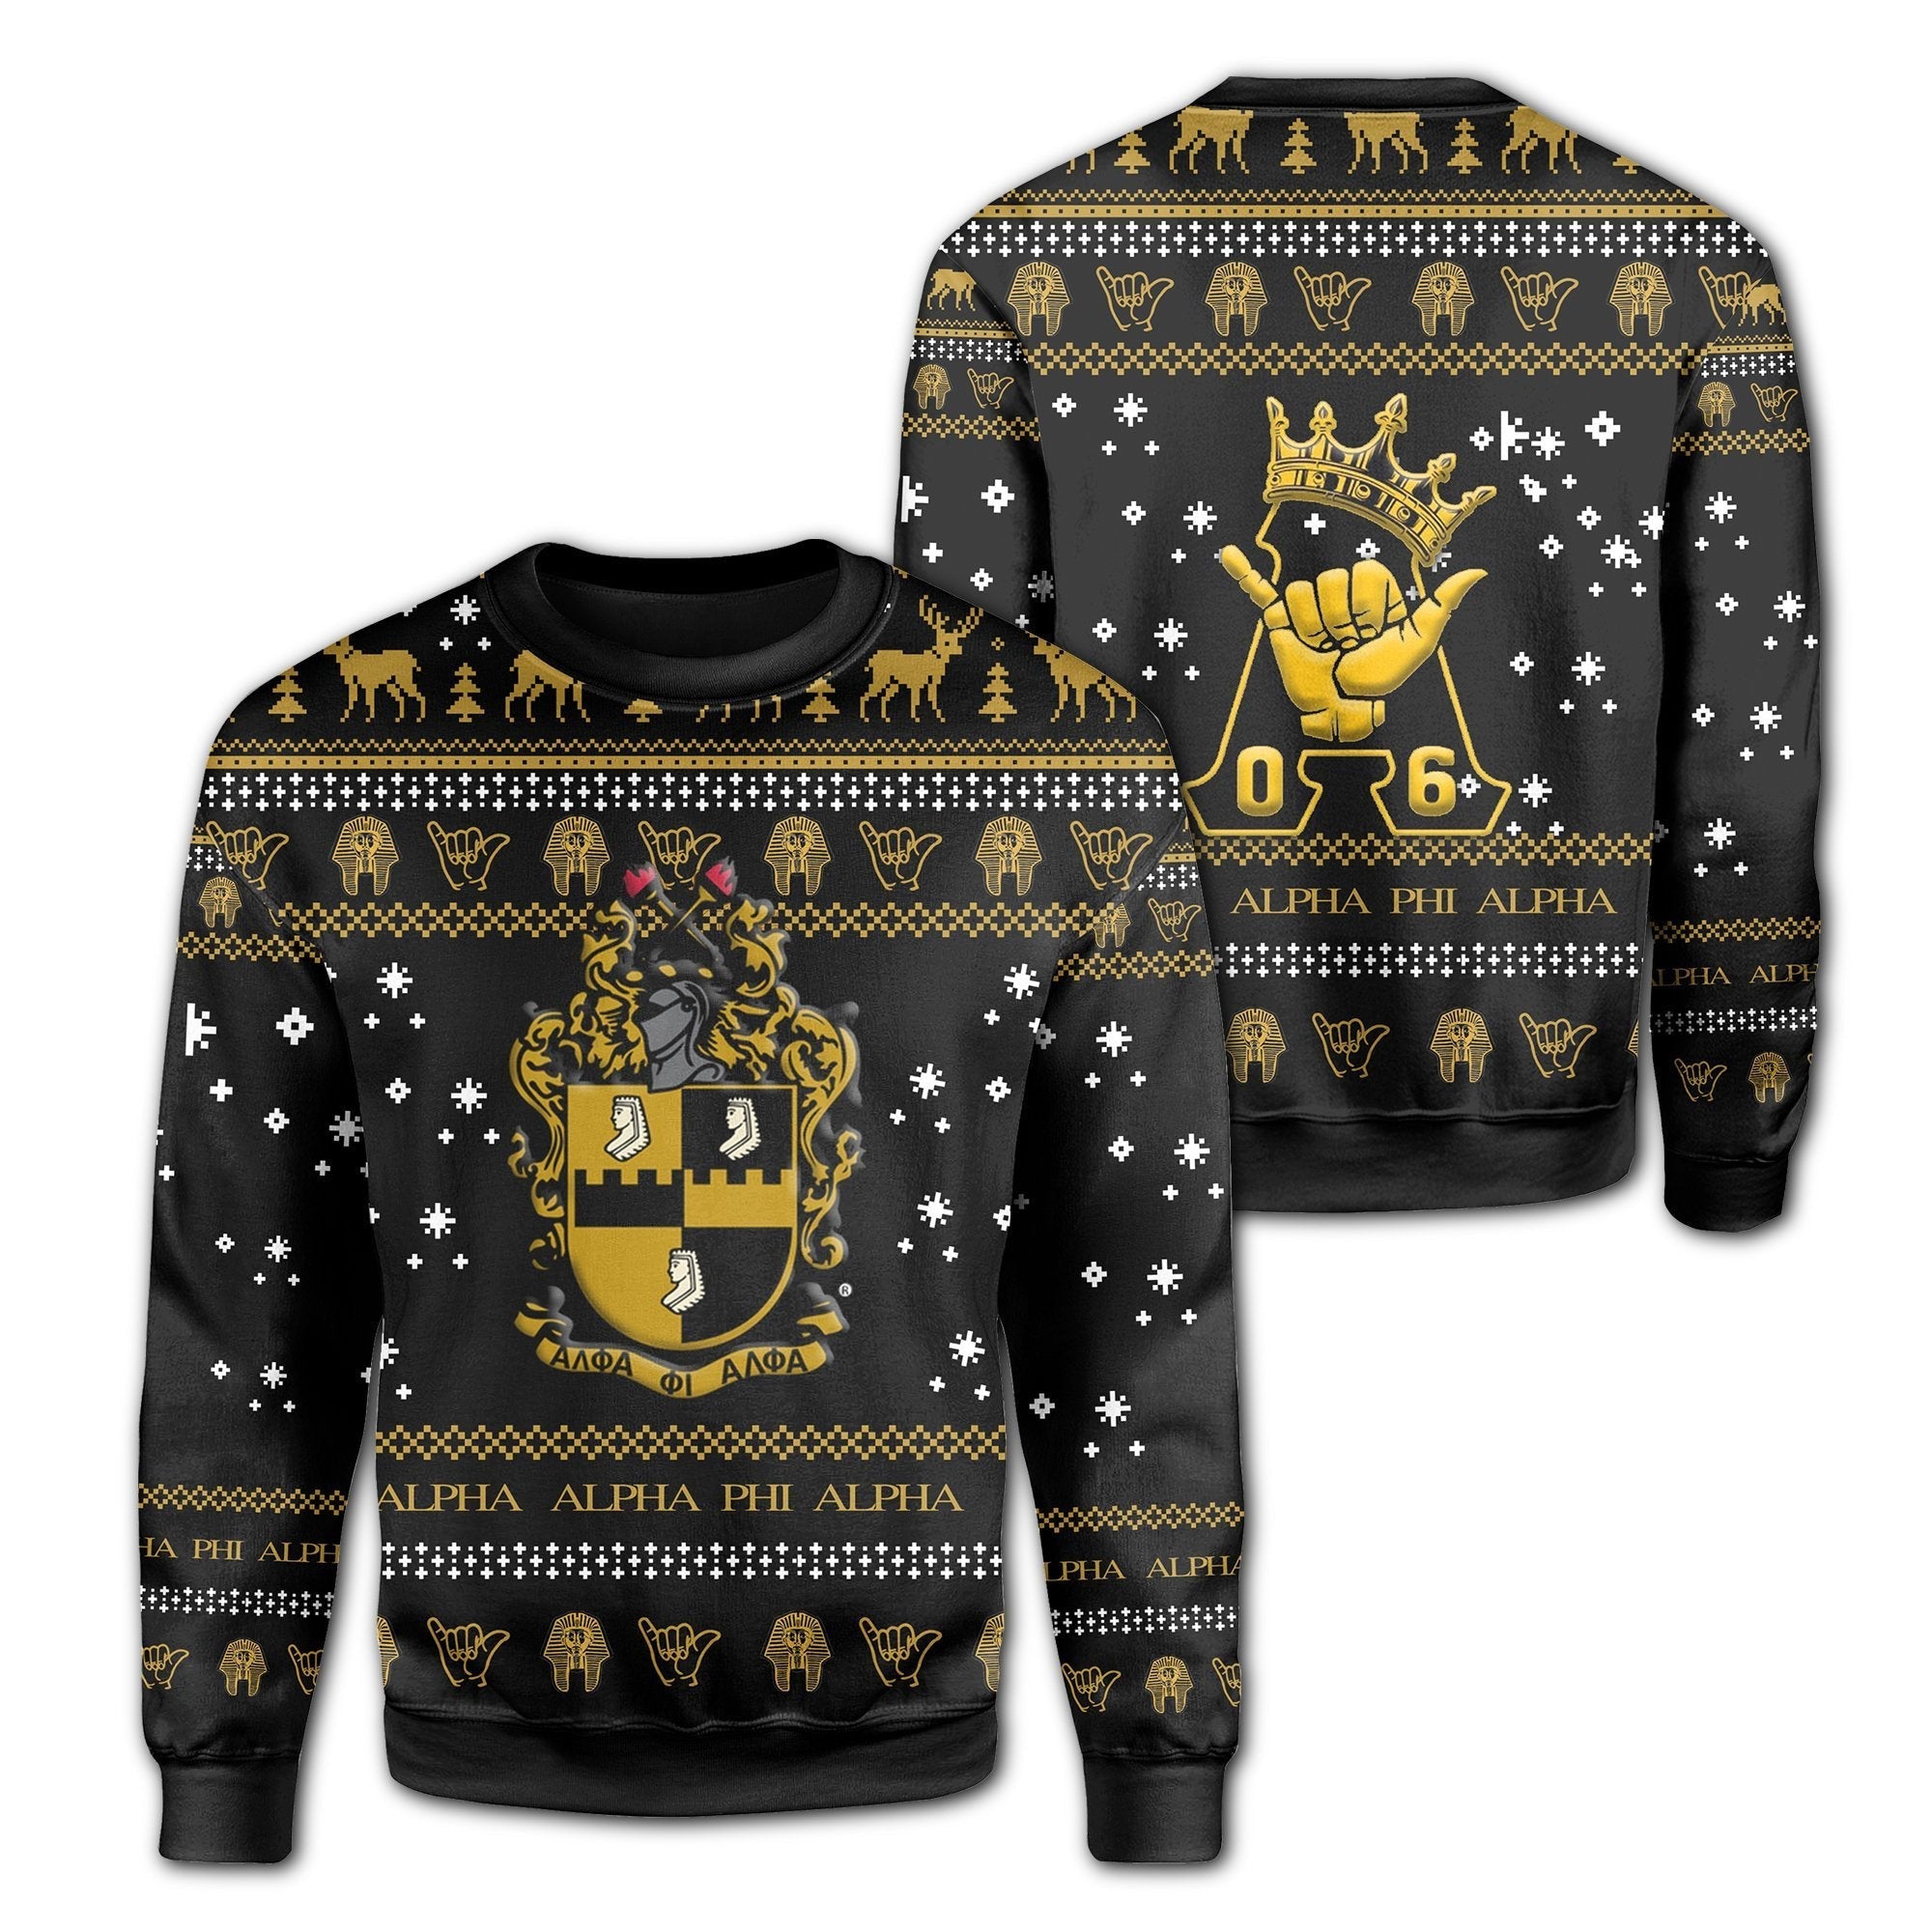 Fraternity Sweatshirt - Alpha Phi Alpha Christmas Style Sweatshirt